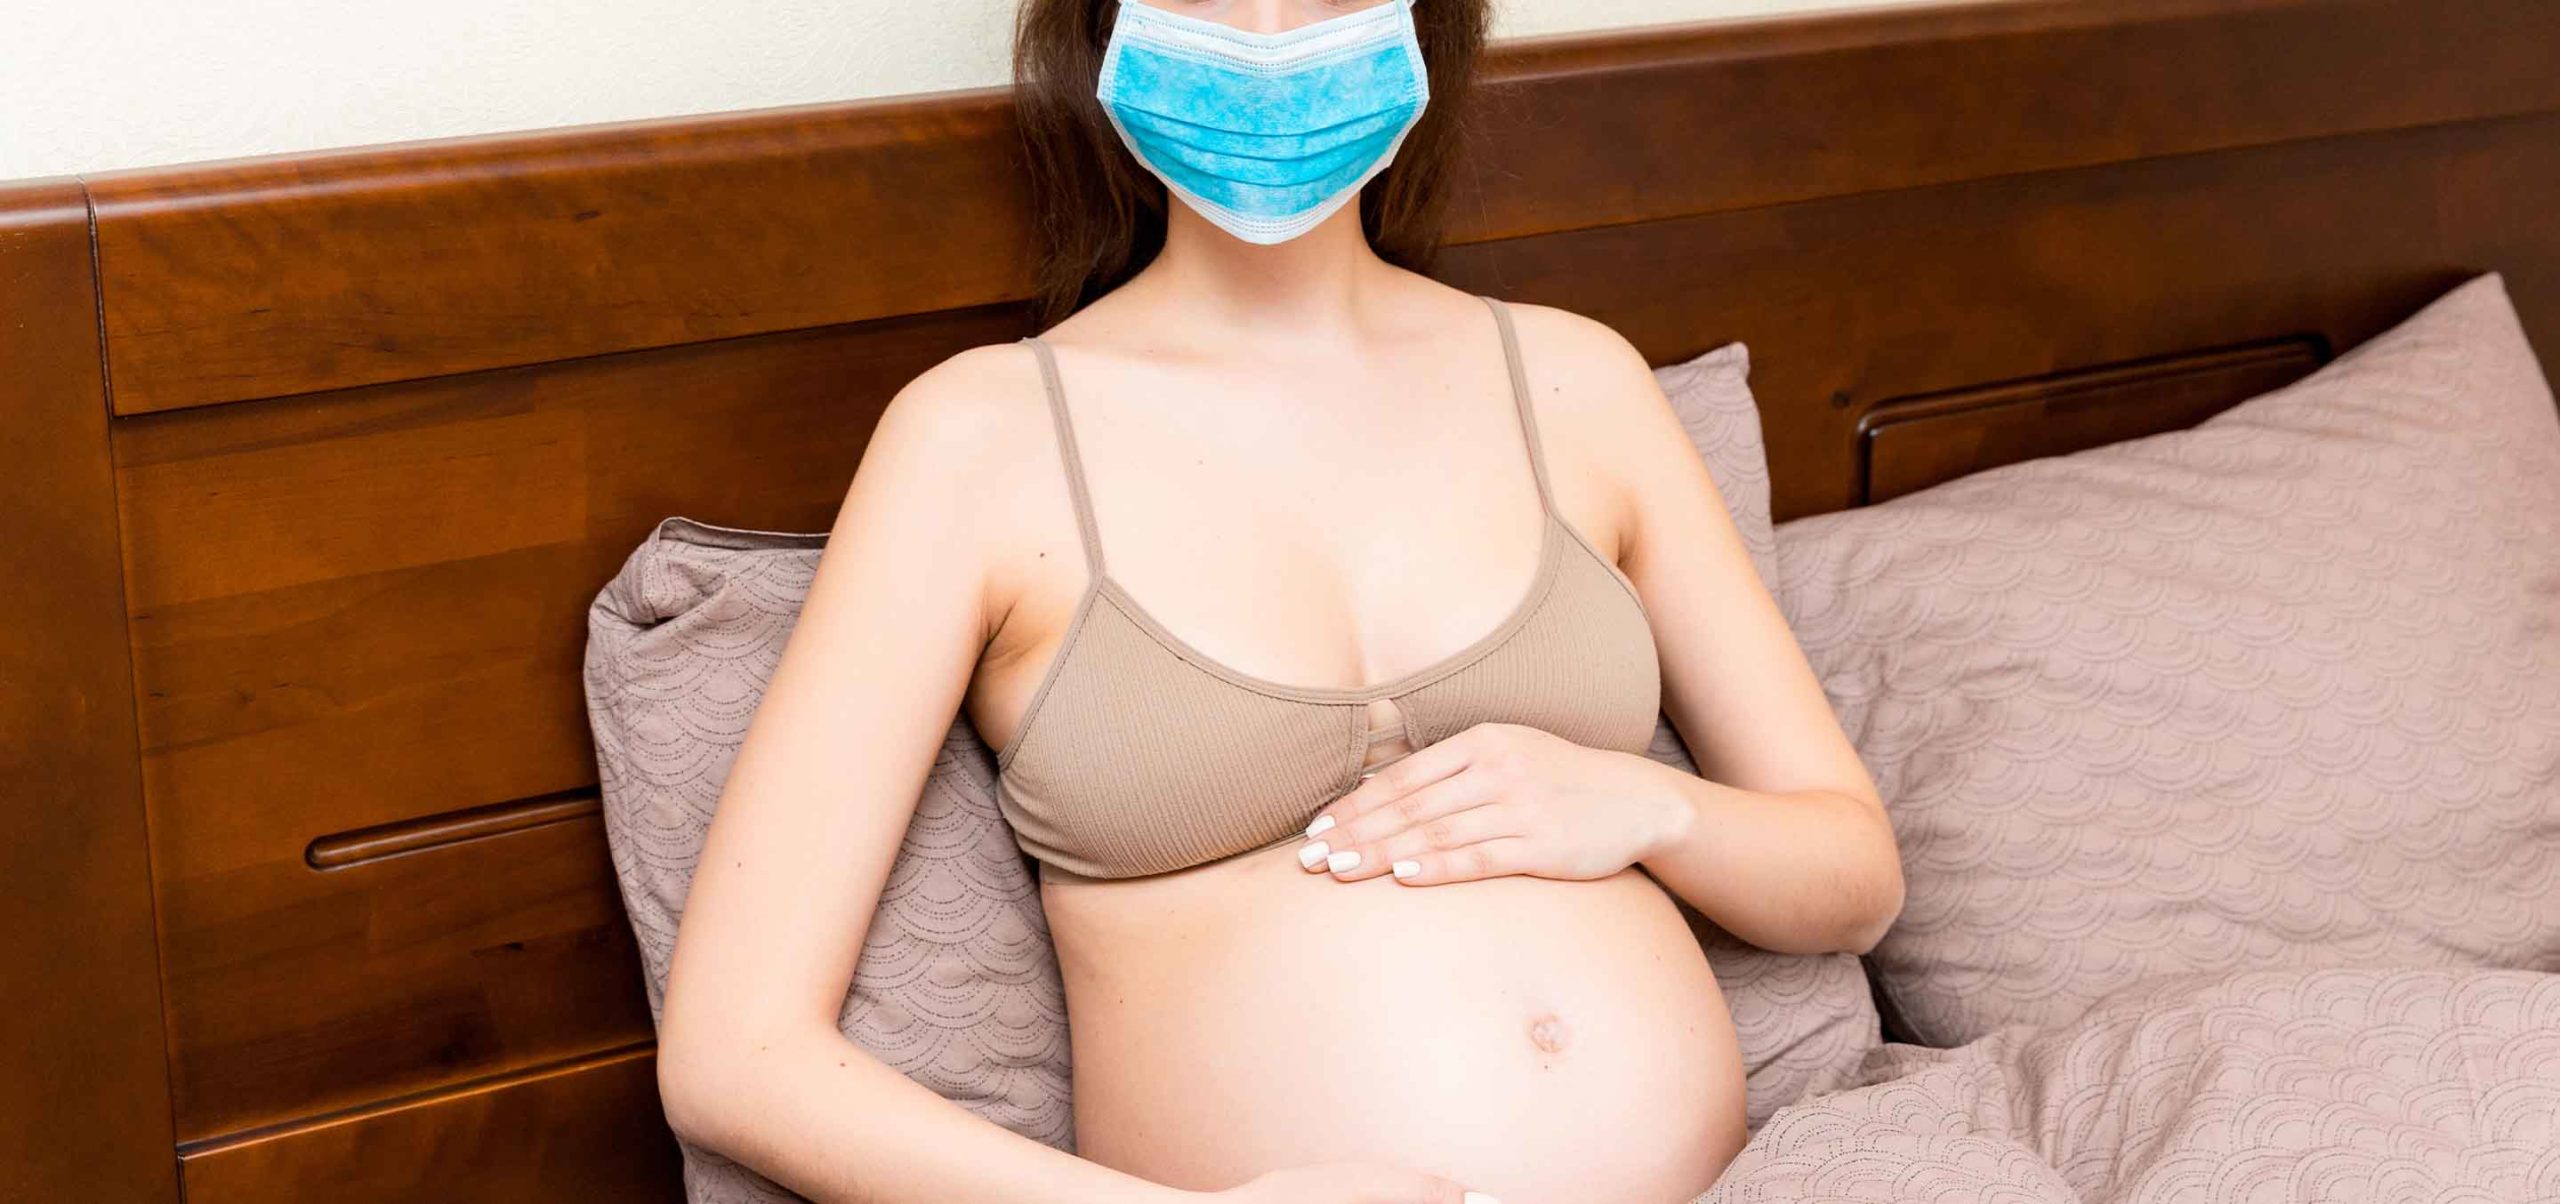 grávida sentada a utilizar máscara preventivamente contra o COVID-19